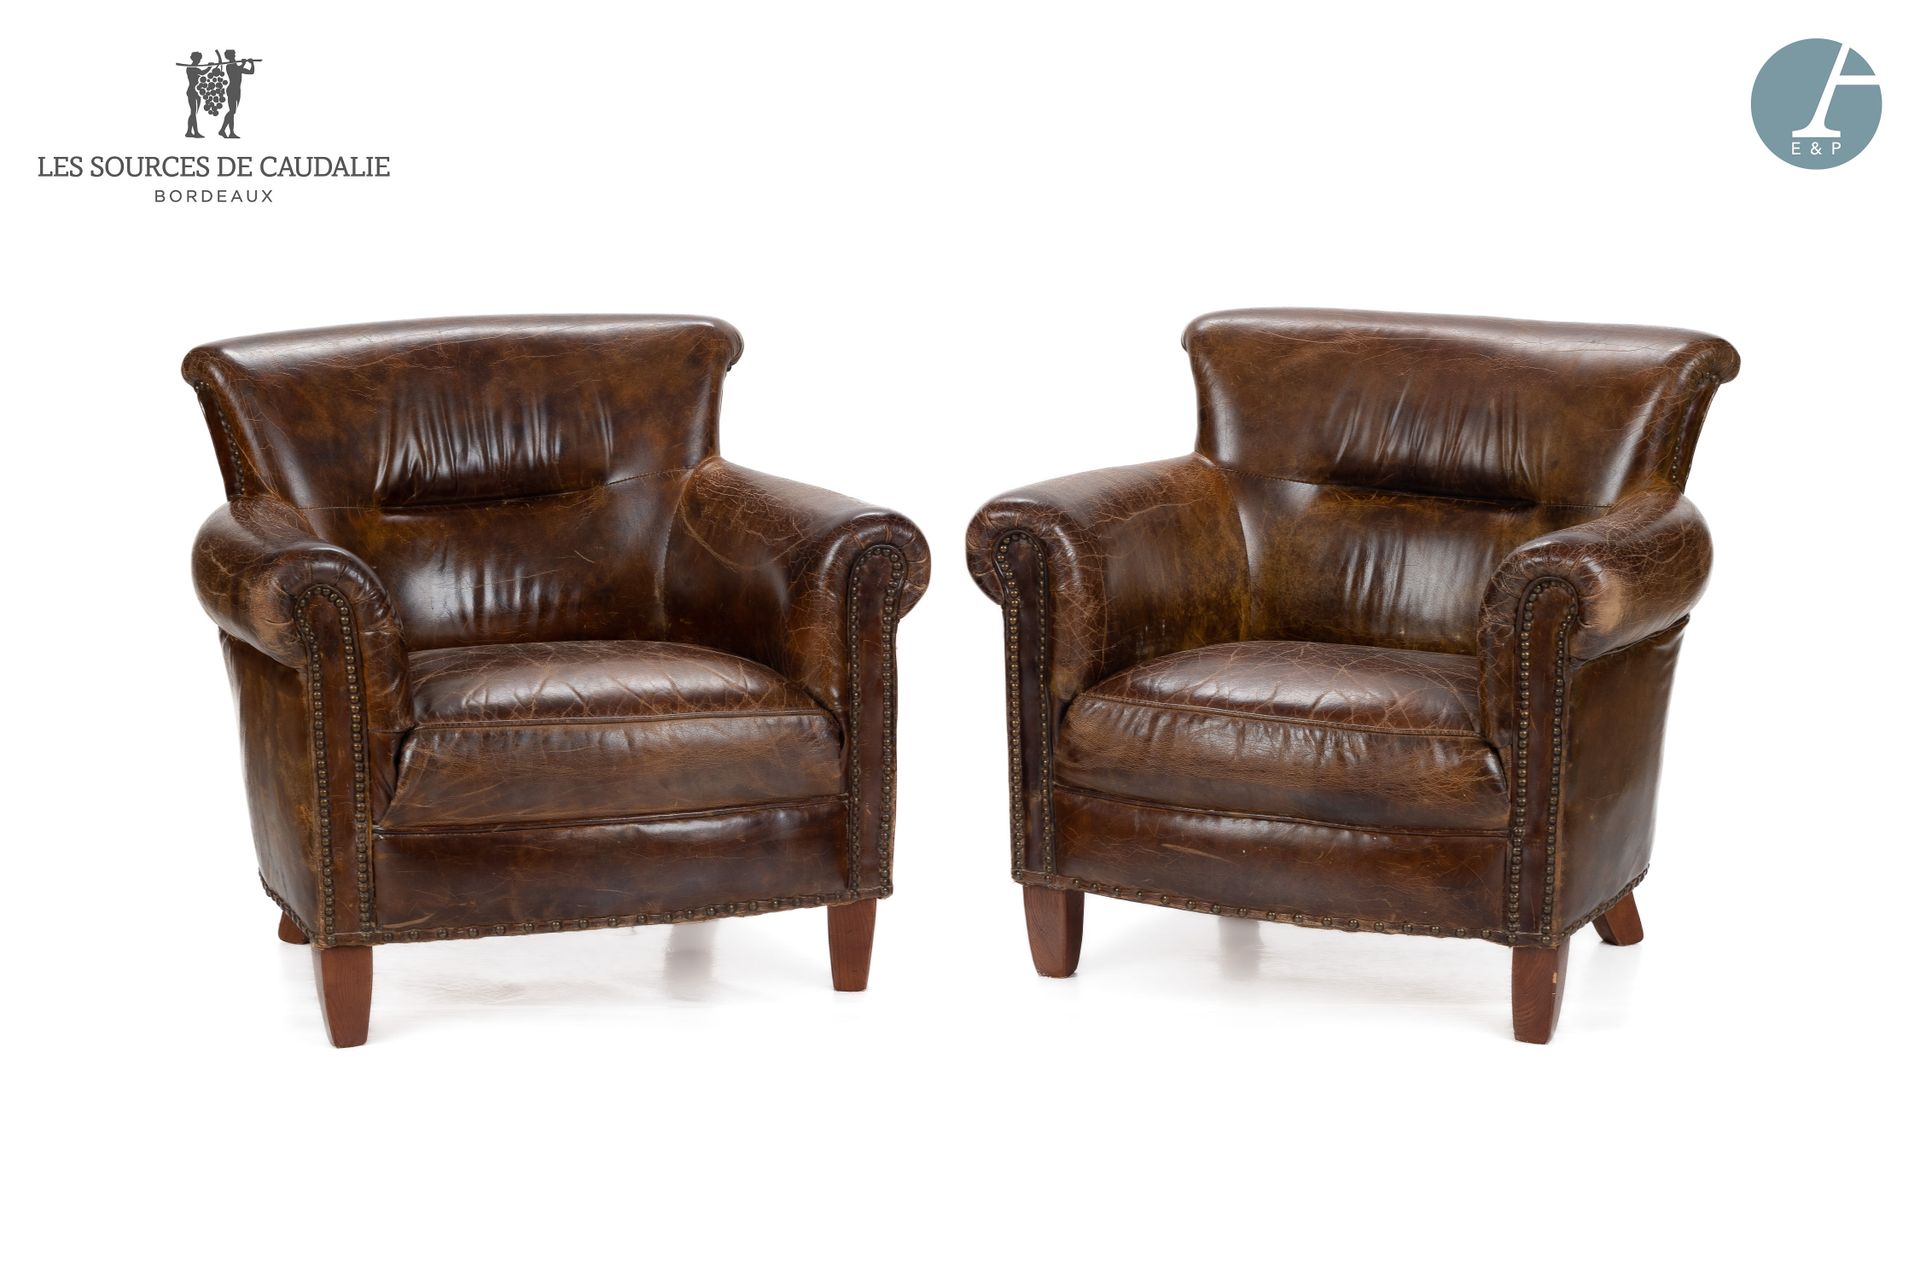 Null 源自Caudalie "Les Etampes" (Maison du Lièvre) 的25号房间
一对棕色皮革俱乐部椅
使用条件
高：73厘米 -&hellip;